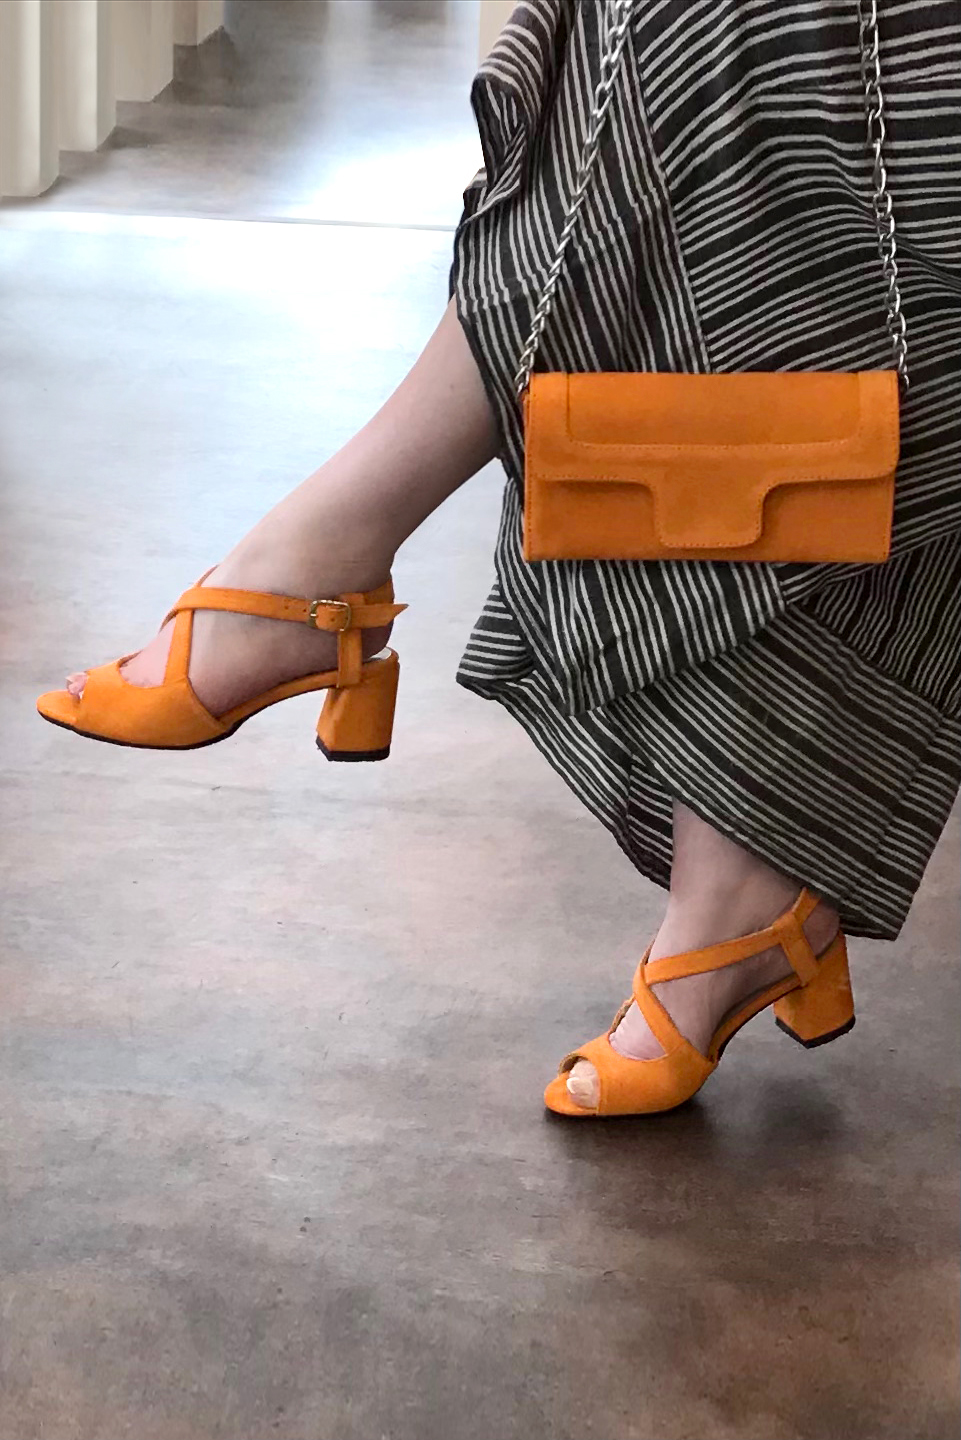 Sandale femme : Sandale soirées et cérémonies couleur orange abricot. Bout rond. Talon mi-haut évasé. Vue porté - Florence KOOIJMAN